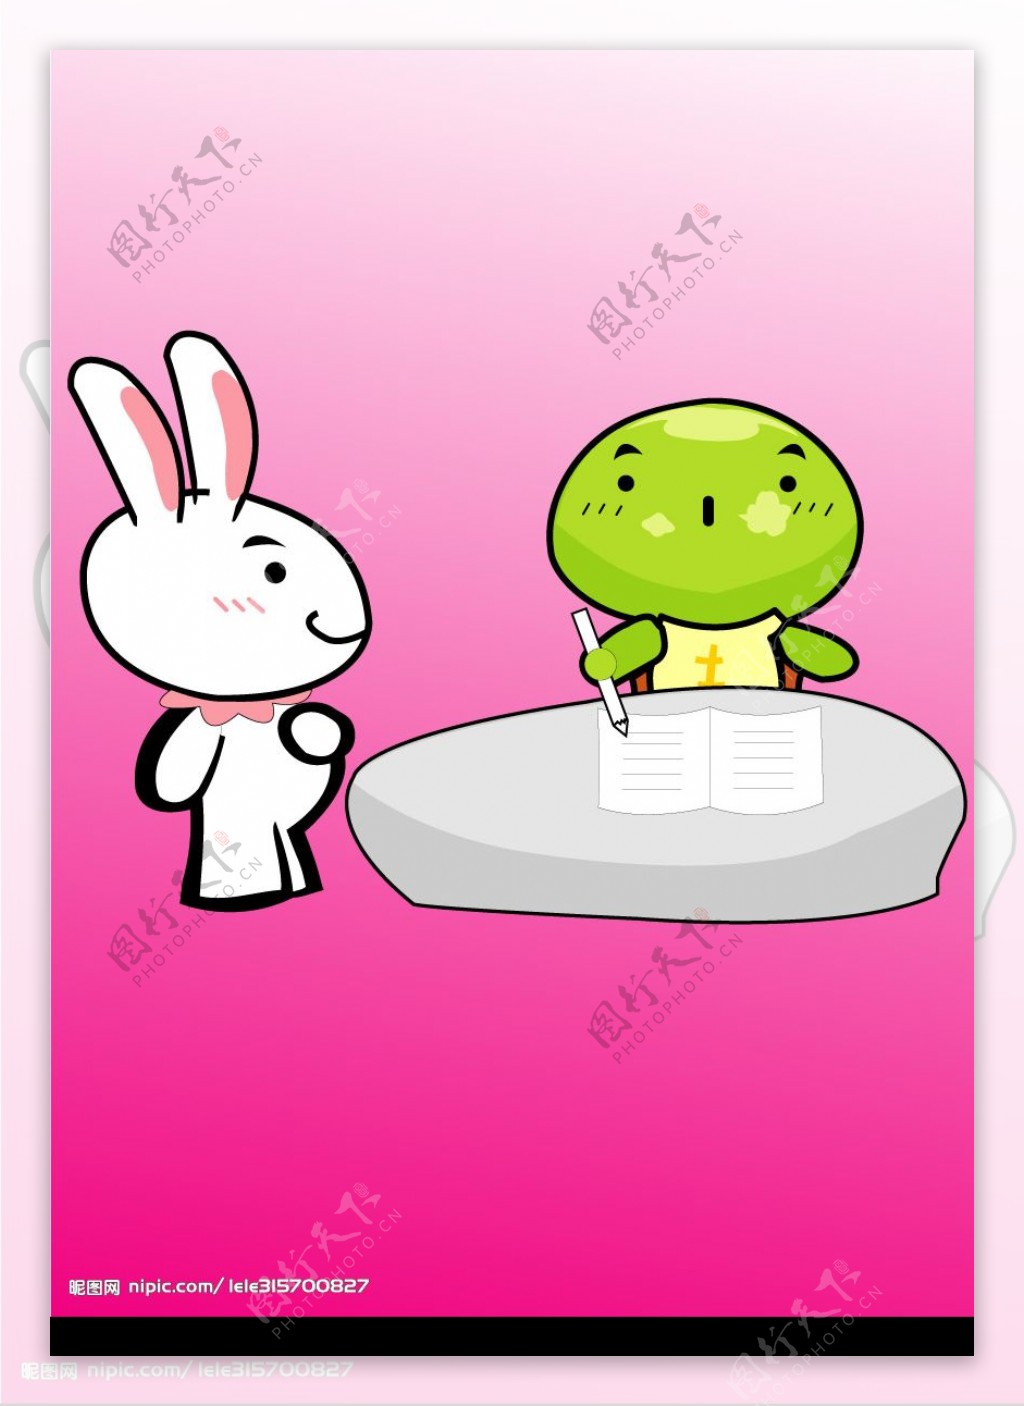 可爱的兔子和小乌龟图片